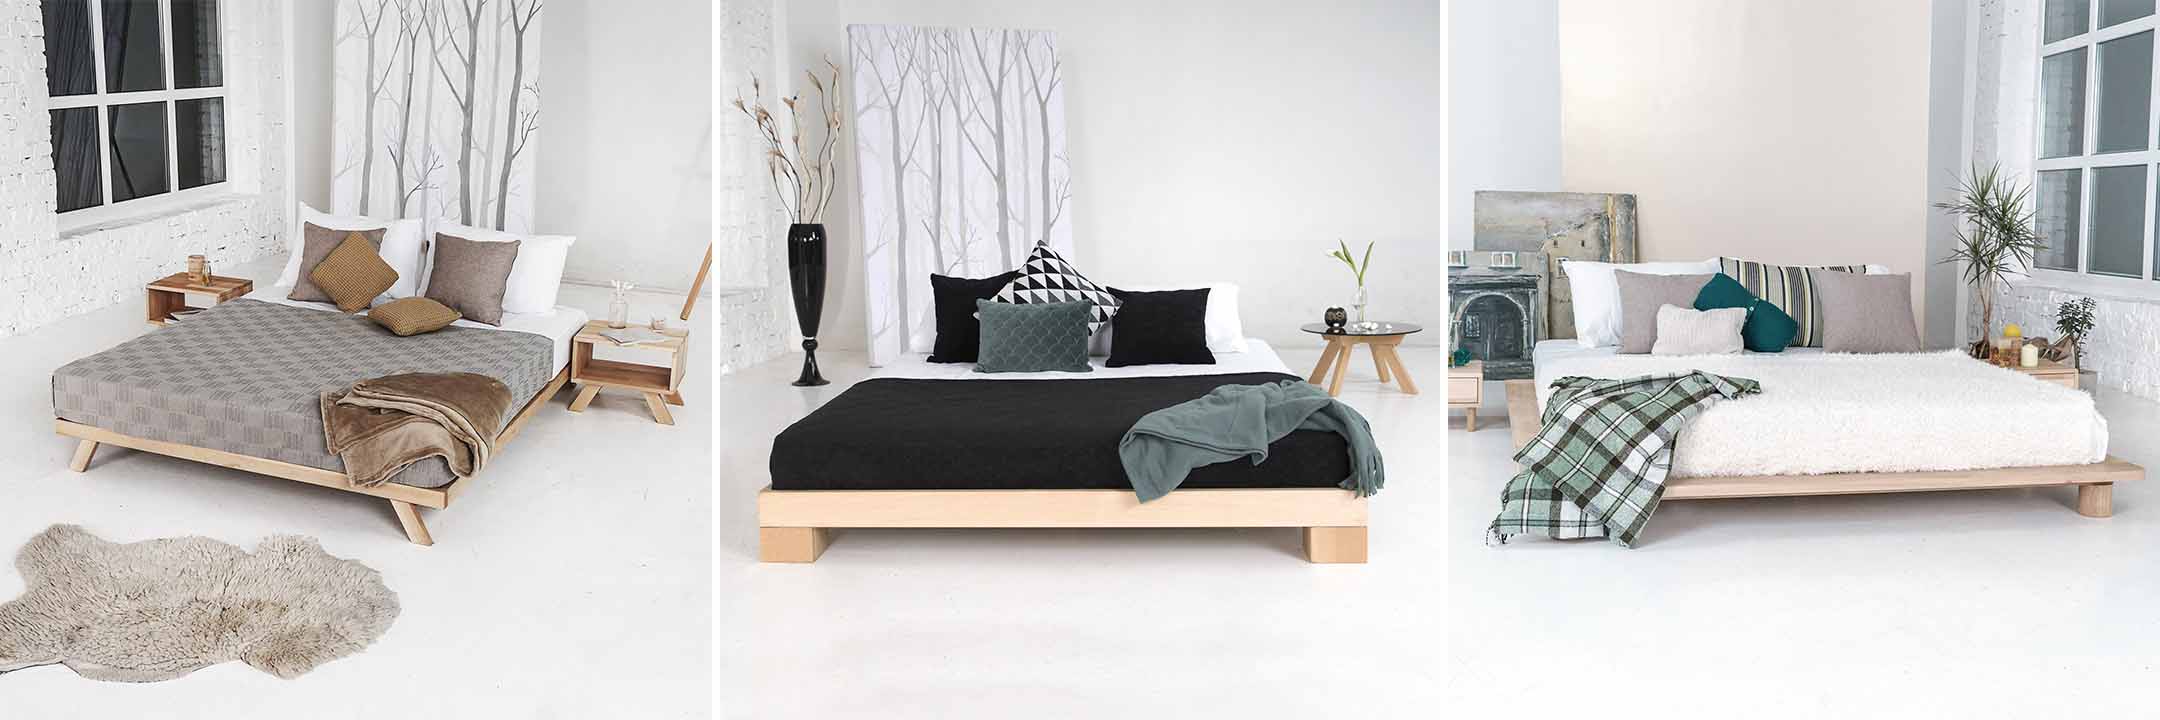 Wooden double beds in Scandinavian design